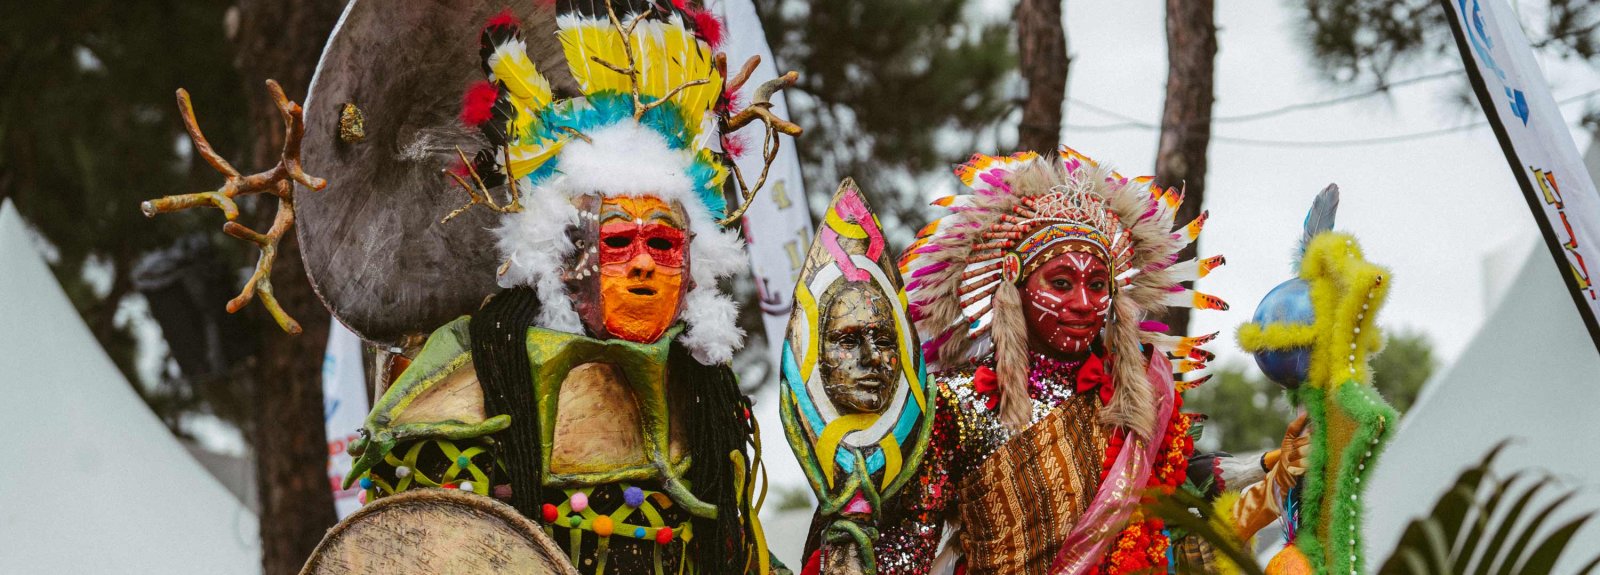 Les personnages et costumes du carnaval guyanais